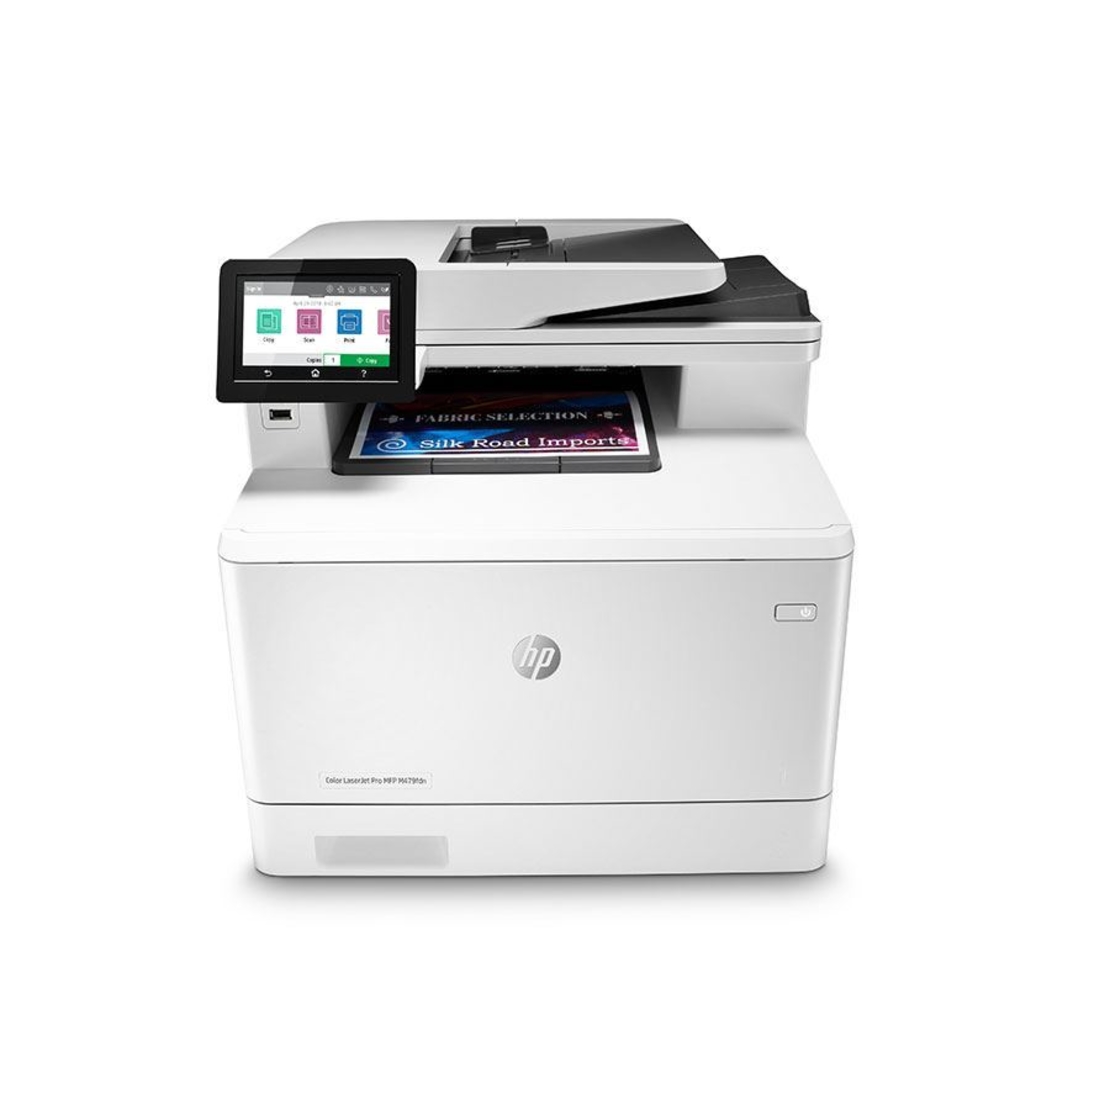 מדפסת משולבת לייזר צבעונית HP Color LJ Pro M479fnw